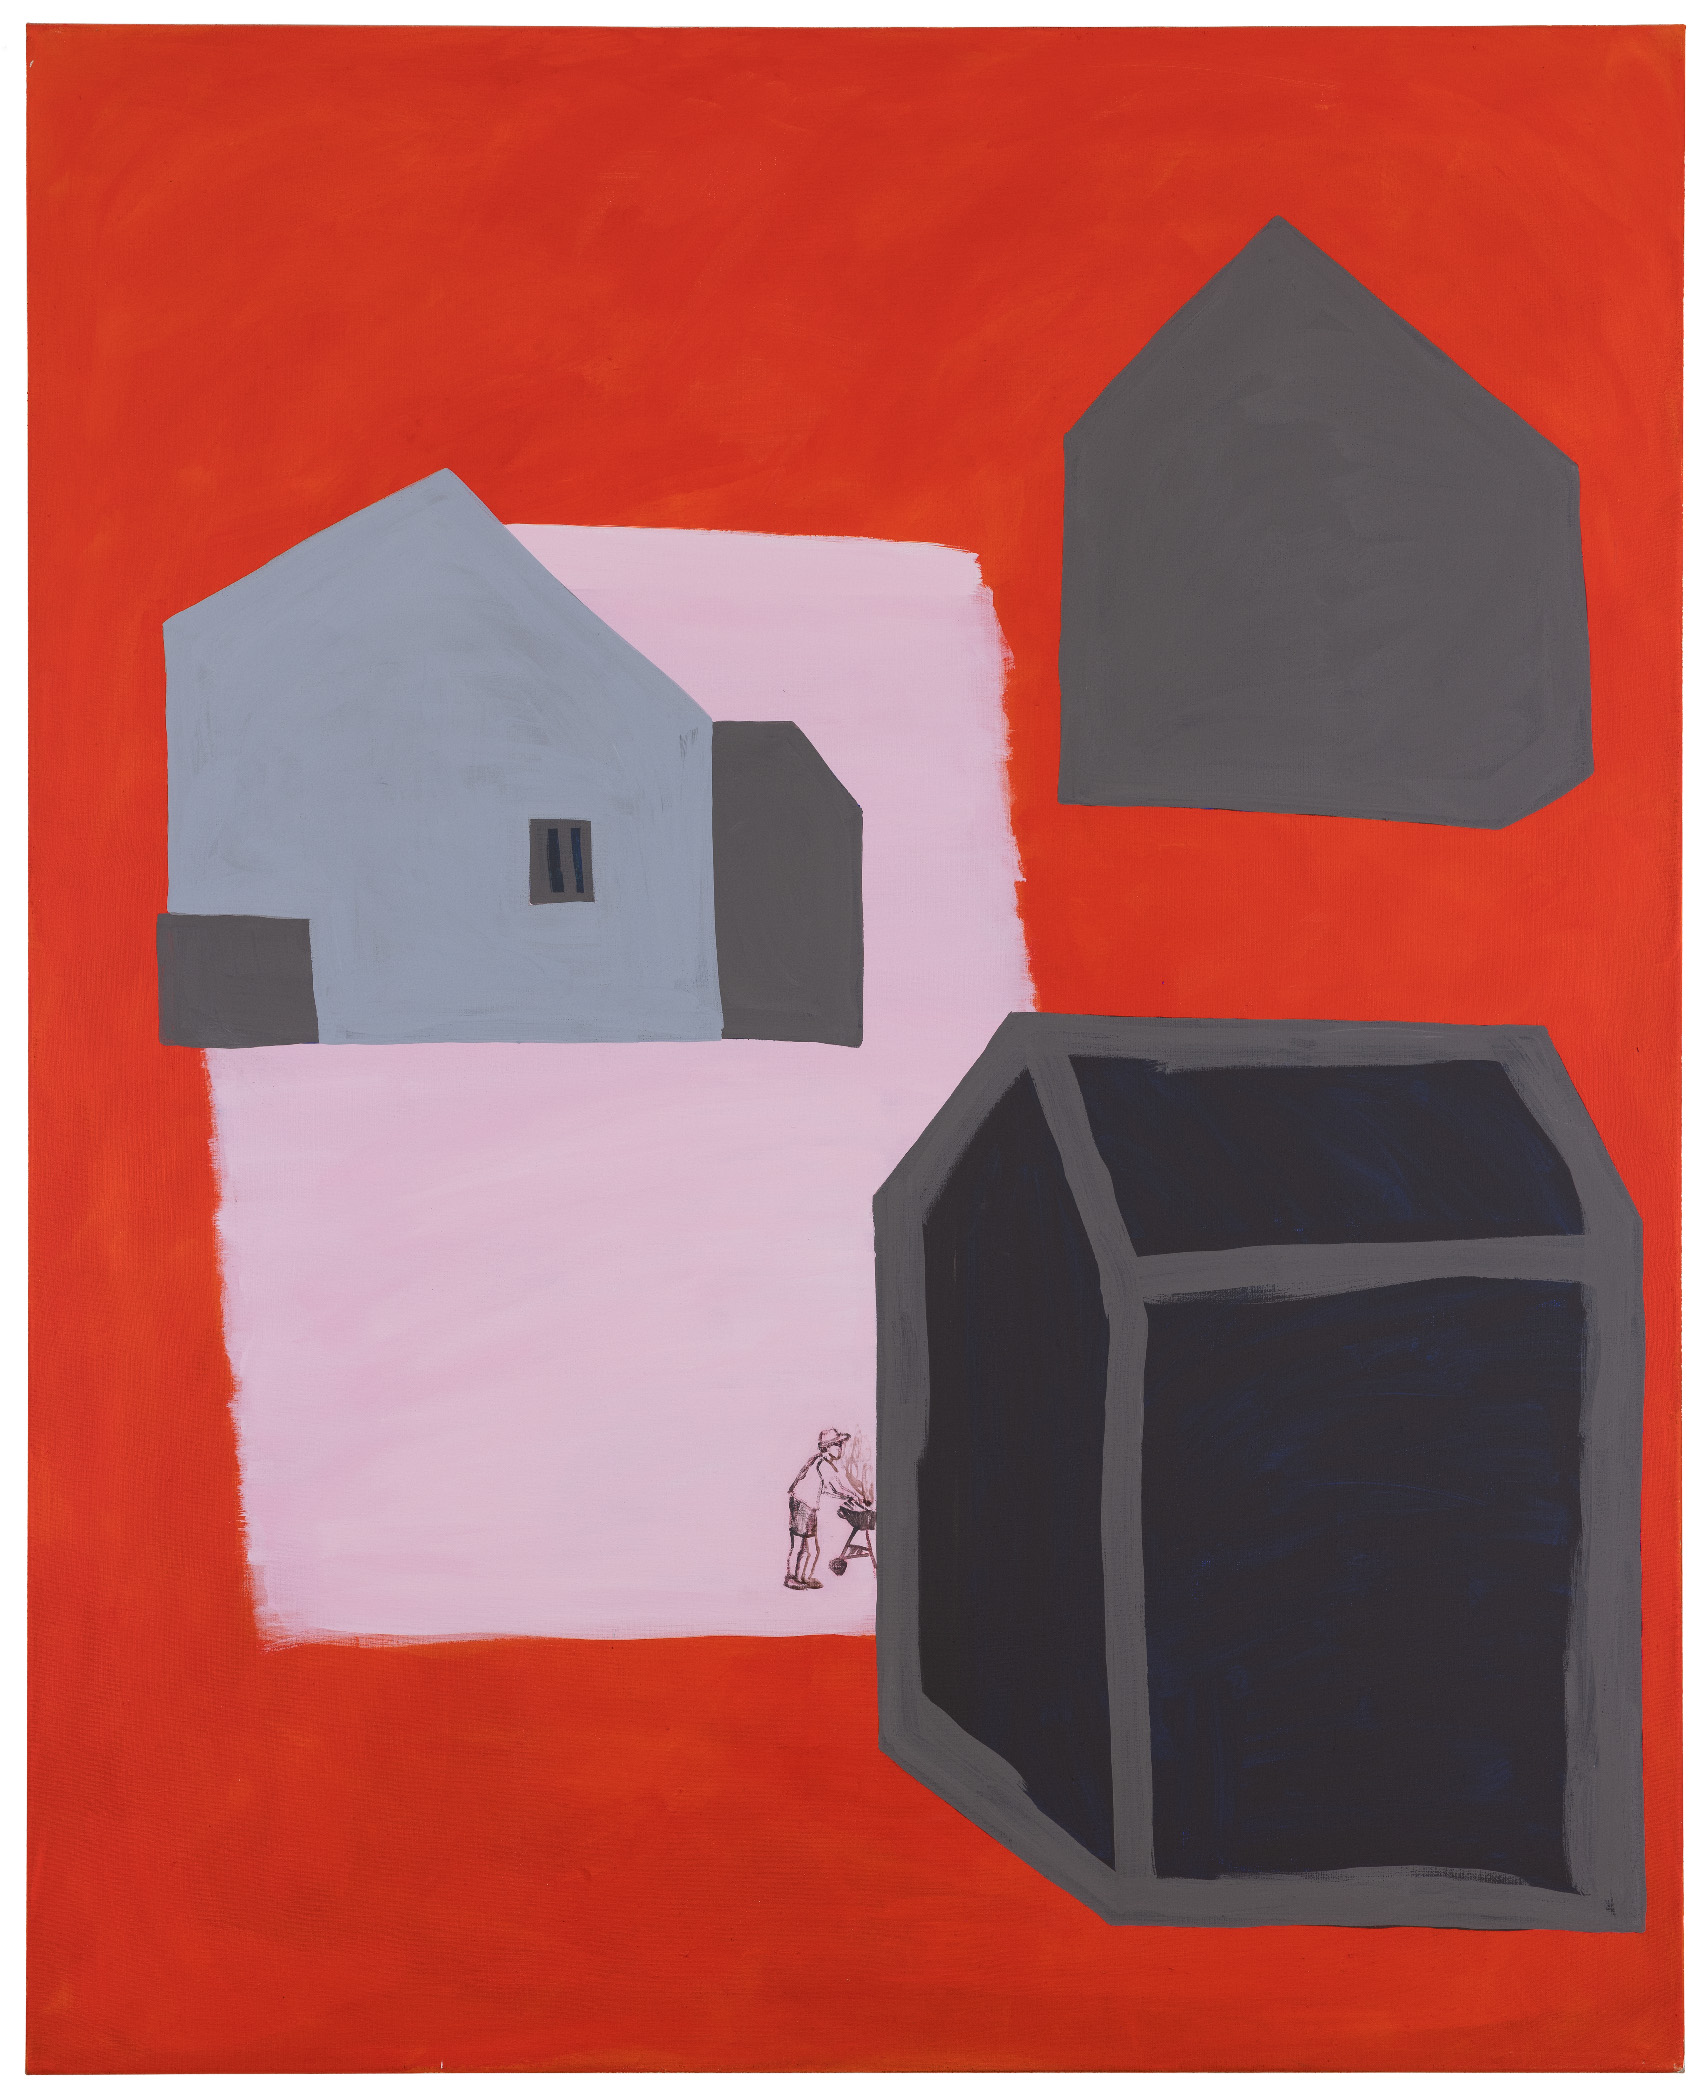 Obraz w pionowym prostokącie. na czerwonym tle symbolicznie namalowane 3 domki w kolorze szarym.